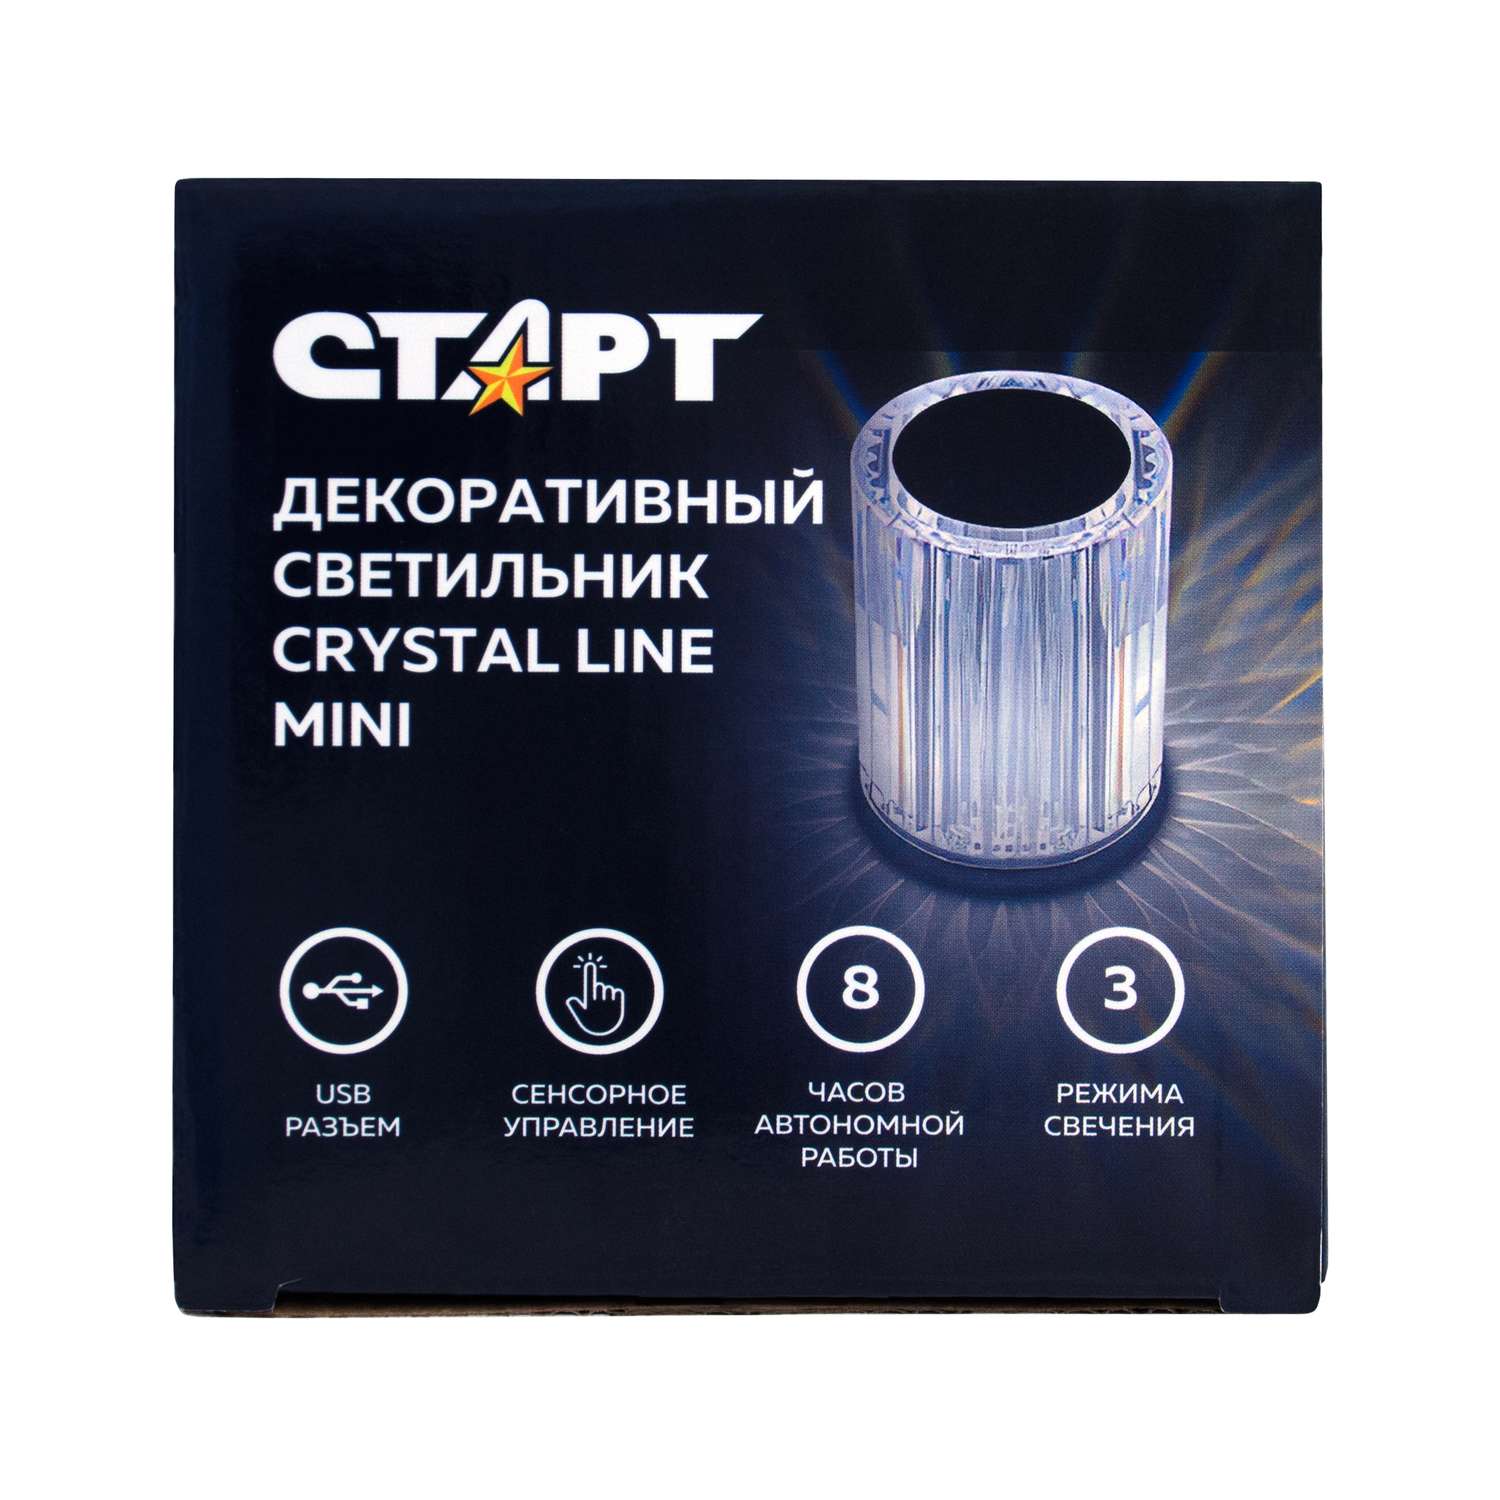 Светильник ночник СТАРТ декоративный кристаллической формы в виде линий Crystal Line mini - фото 2